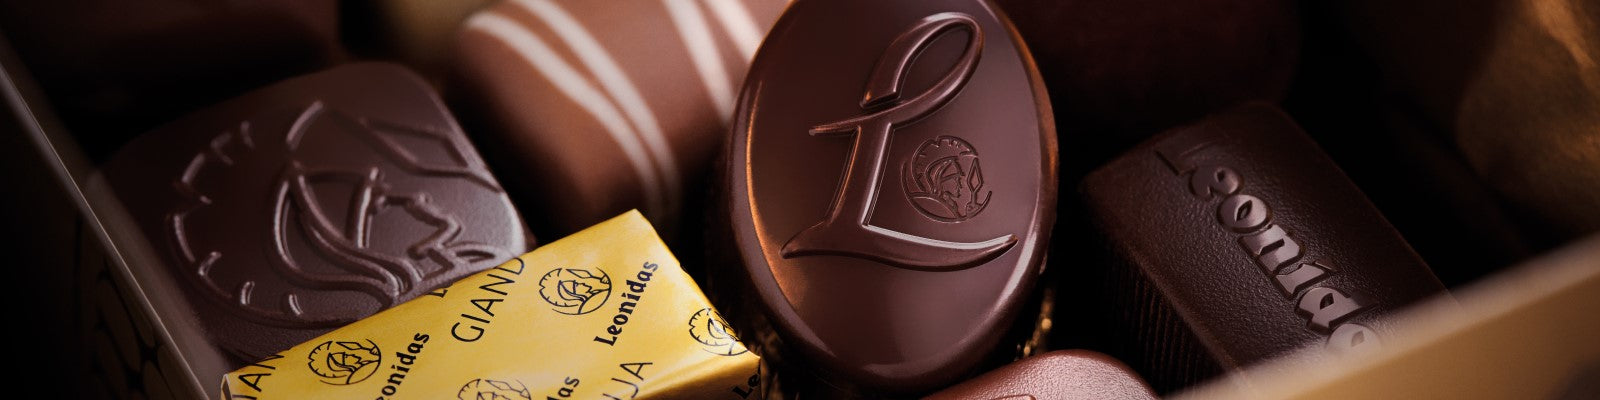 Chocolat Leonidas